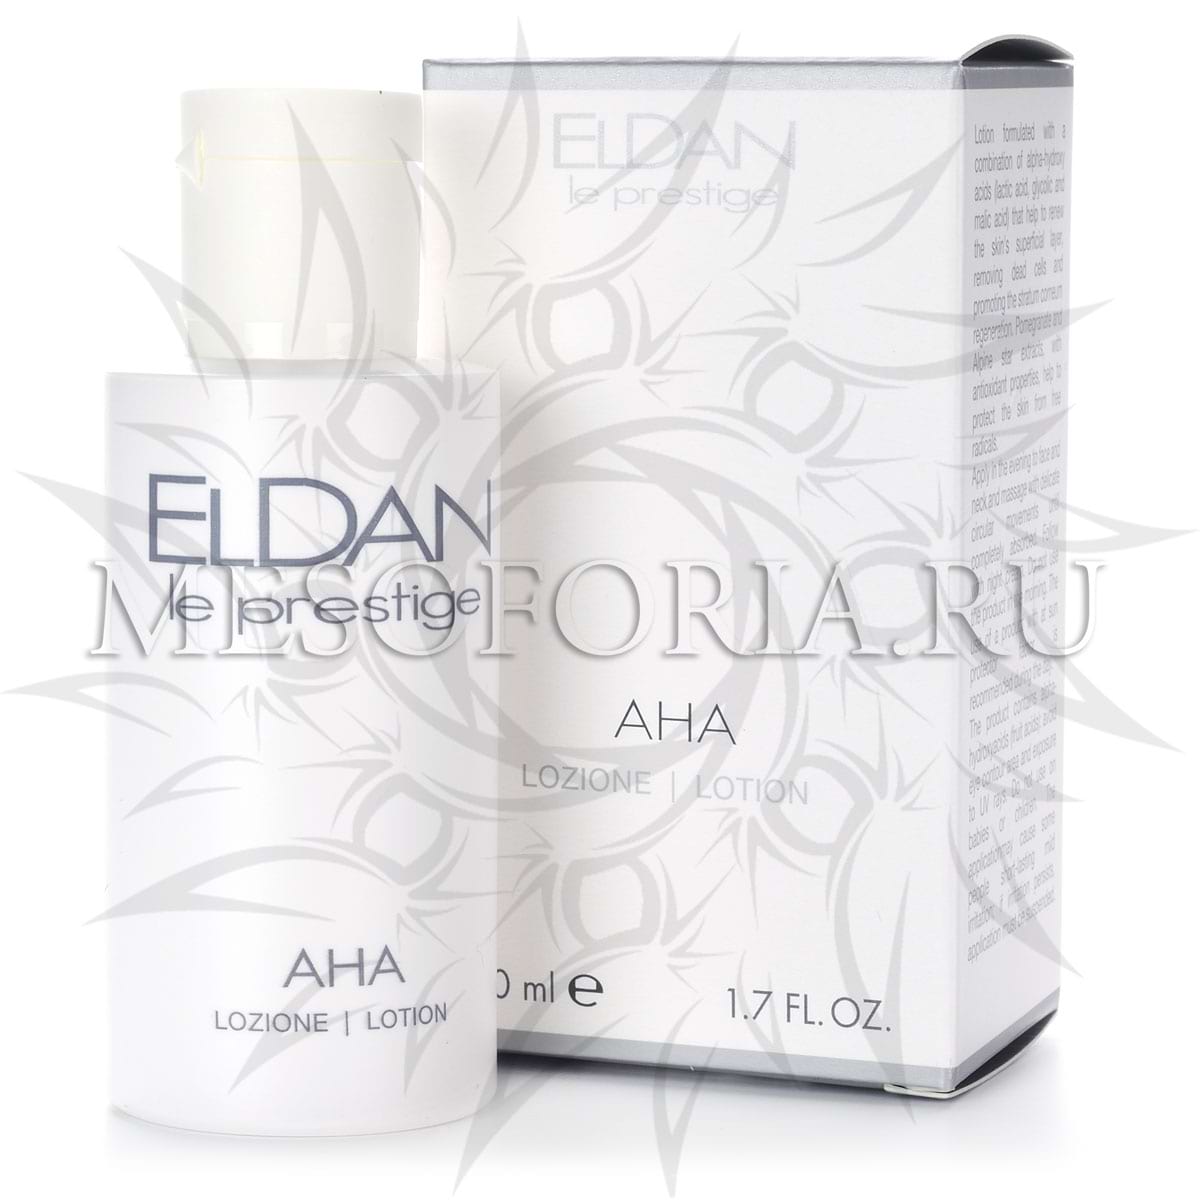 Поверхностный молочный пилинг / AHA Peel Lotion, Le Prestige, Eldan Cosmetics (Элдан косметика), 50 мл